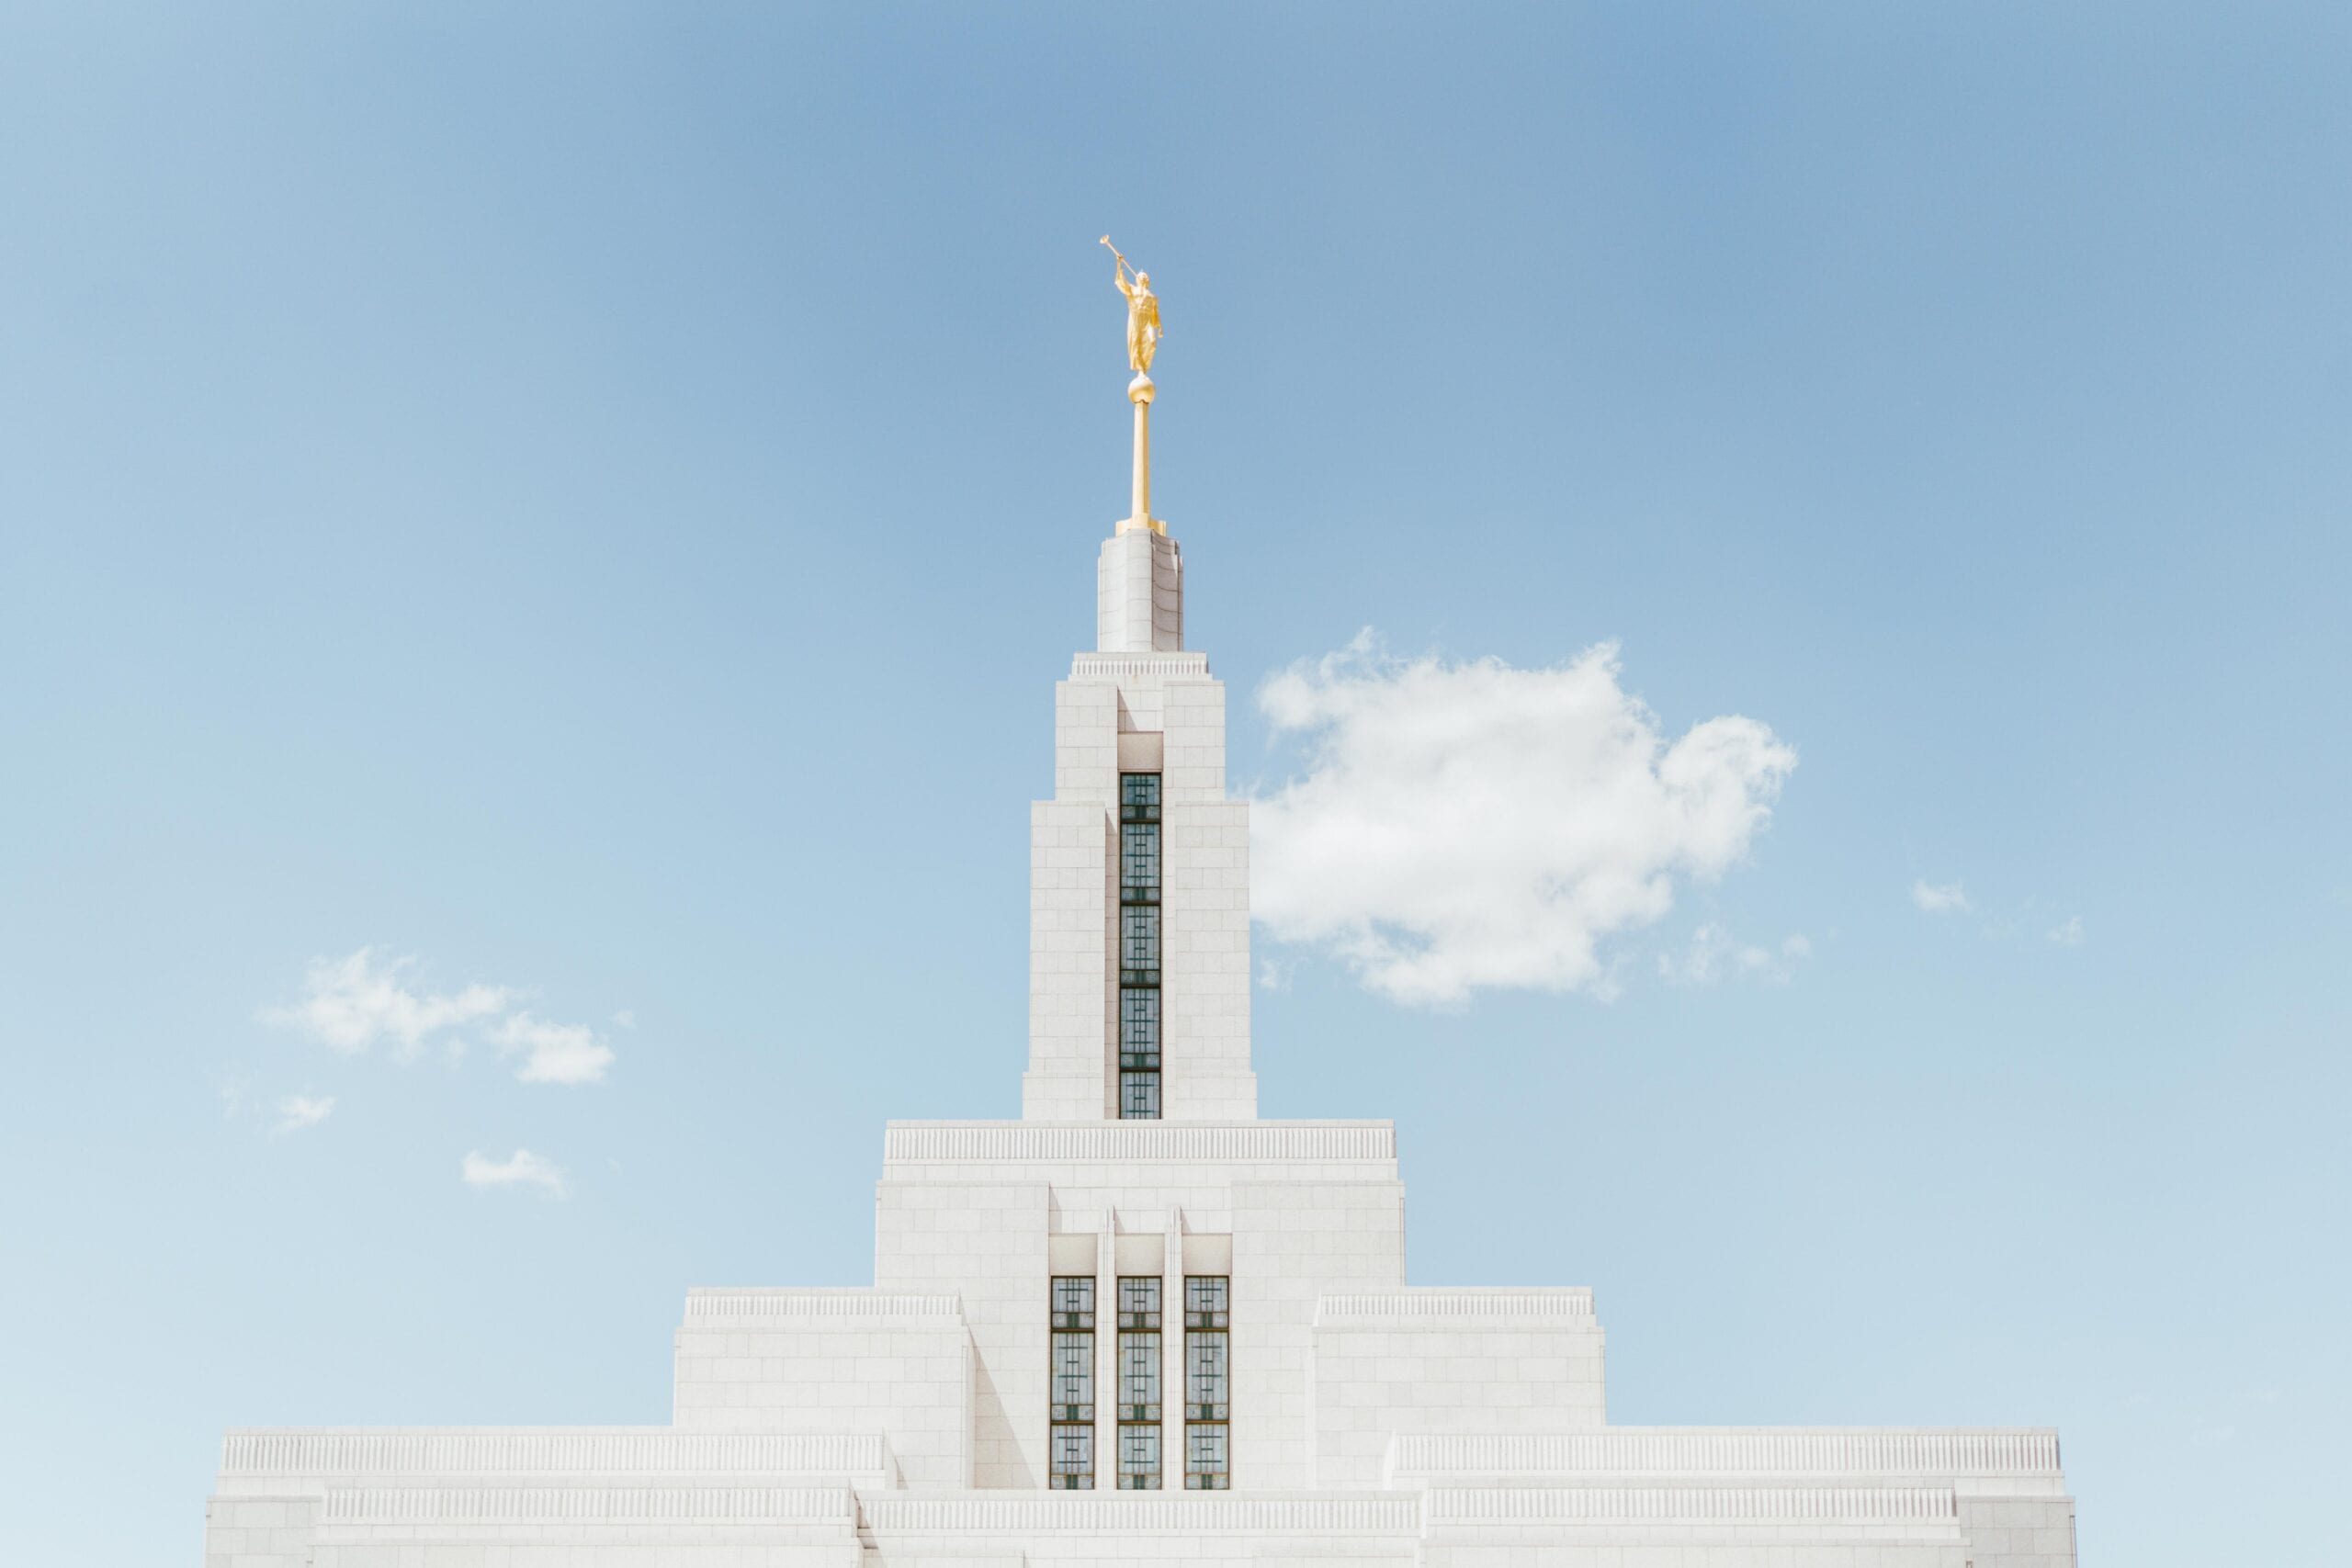 lds temple mormon